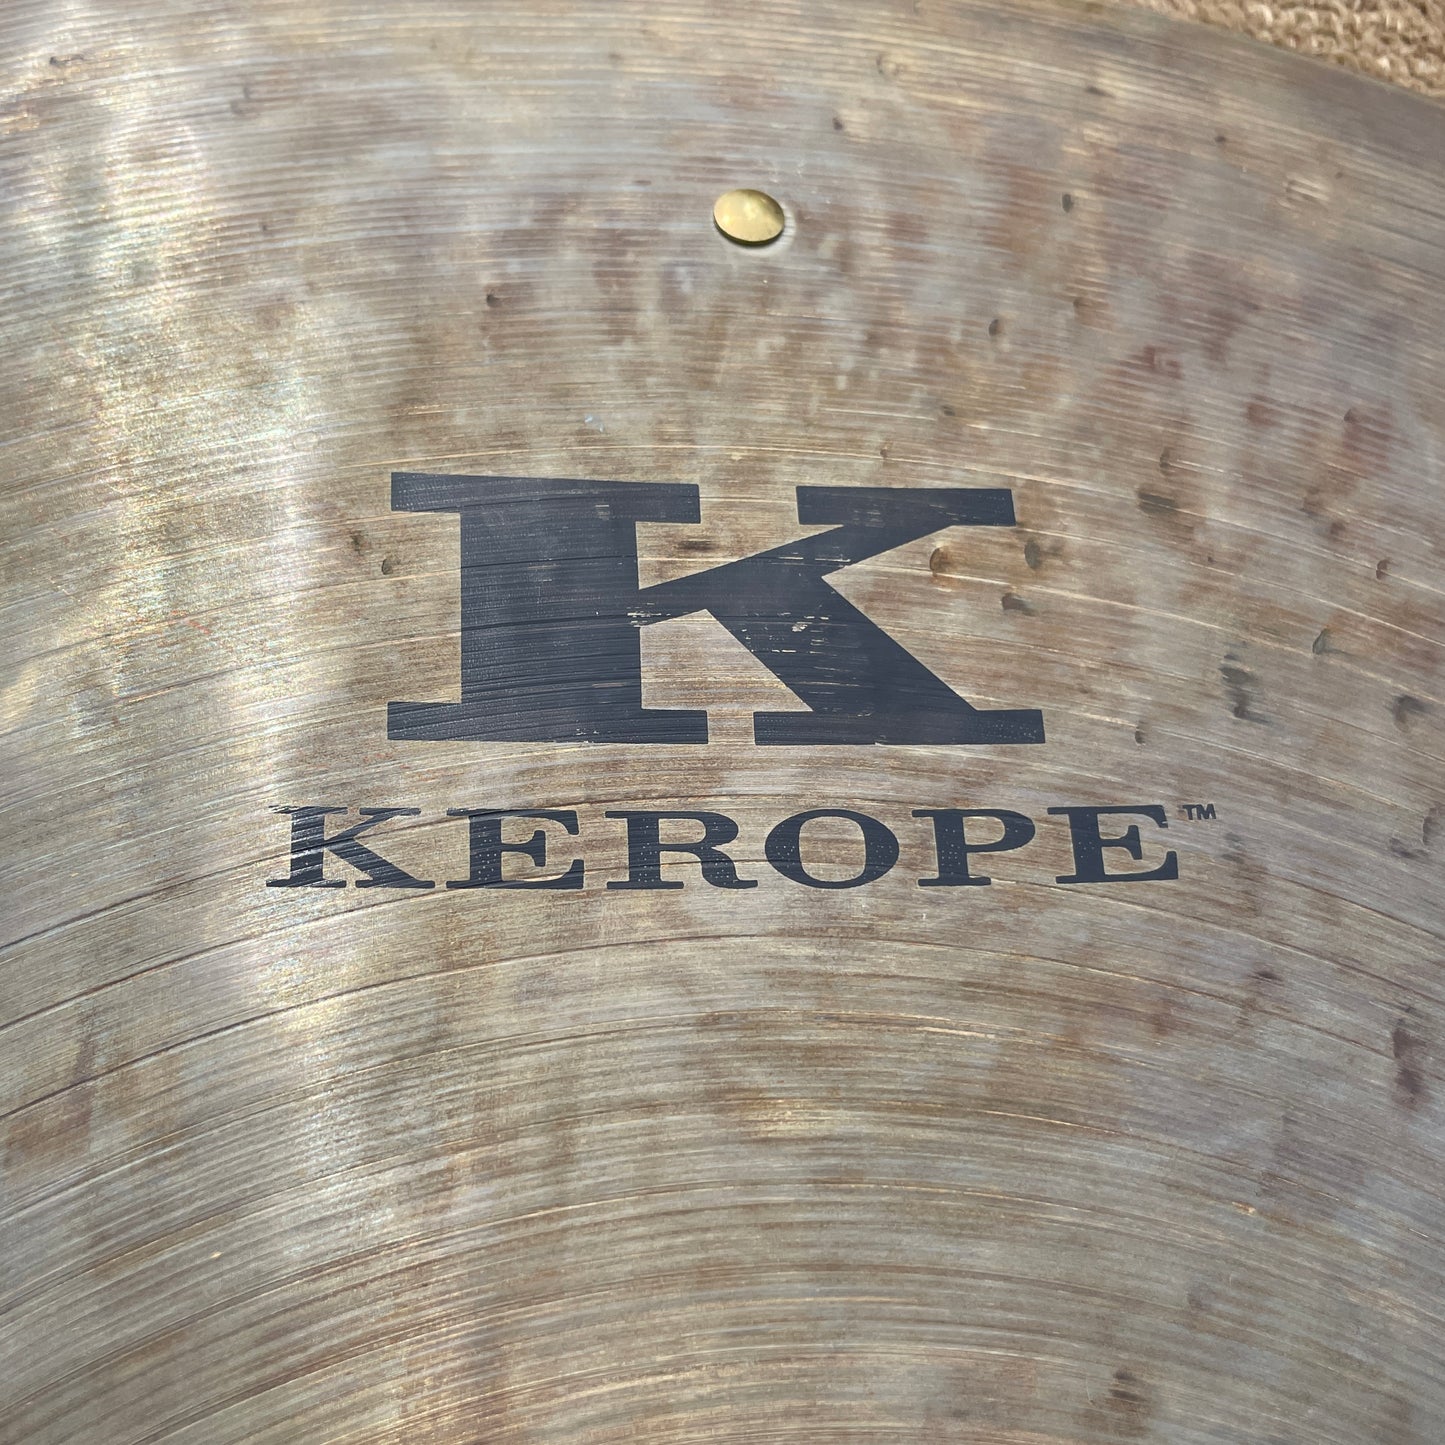 22" K Zildjian KR22R Kerope Ride Cymbal w/ 3 Rivets 2584g *Video Demo*